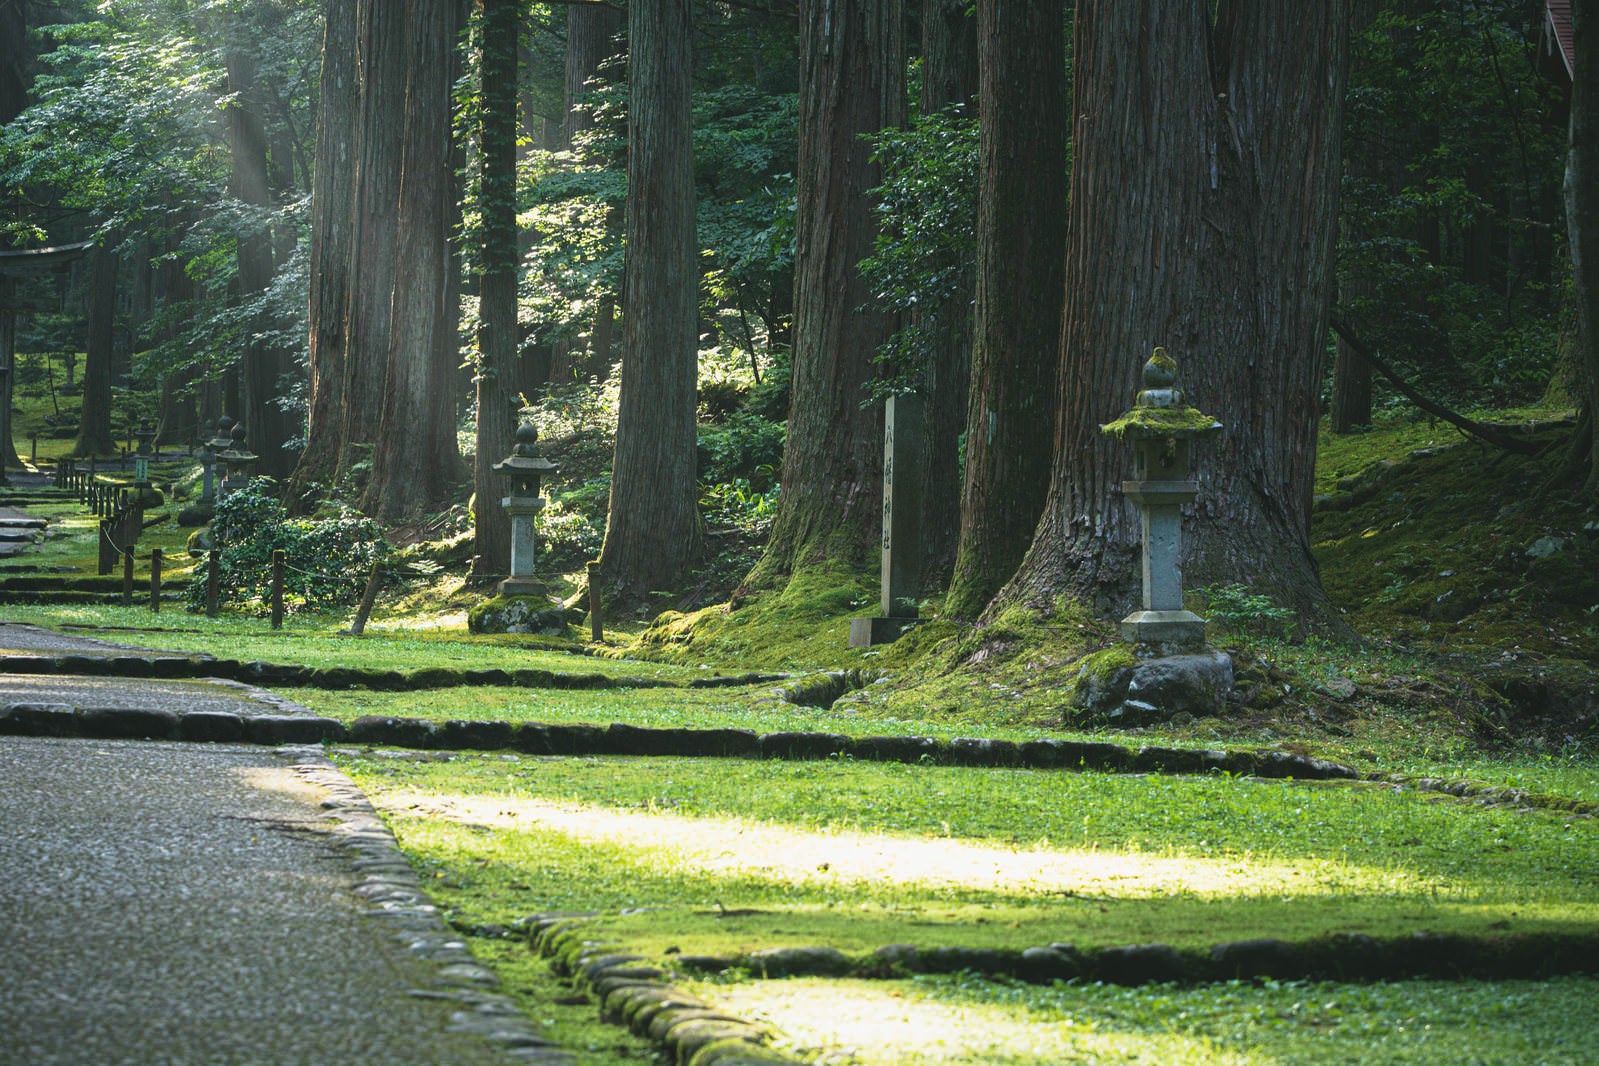 「朝の光が射し込む参道の脇に立ち並ぶ杉並木と石灯籠」の写真